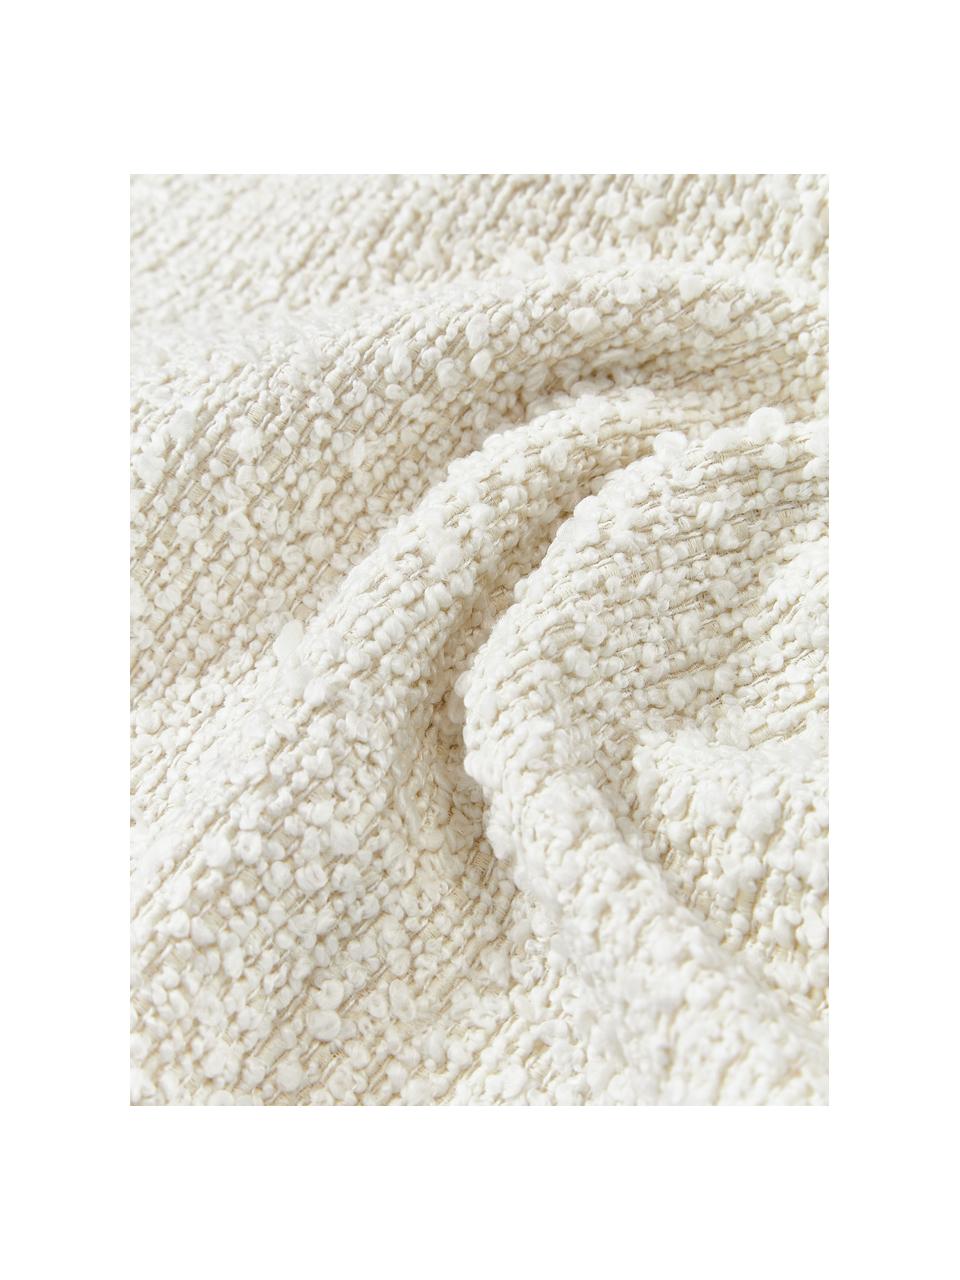 Housse de coussin en bouclette Bellamie, Tissu bouclette (95 % polyester, 5 % polyacrylique)

La bouclette est une matière qui se caractérise par sa texture aux courbes irrégulières. La surface caractéristique est créée par des boucles tissées de fils différents qui confèrent au tissu une structure unique. La structure bouclée a un effet à la fois isolant et moelleux, ce qui rend le tissu particulièrement douillet, Bouclé blanc, larg. 60 x long. 60 cm